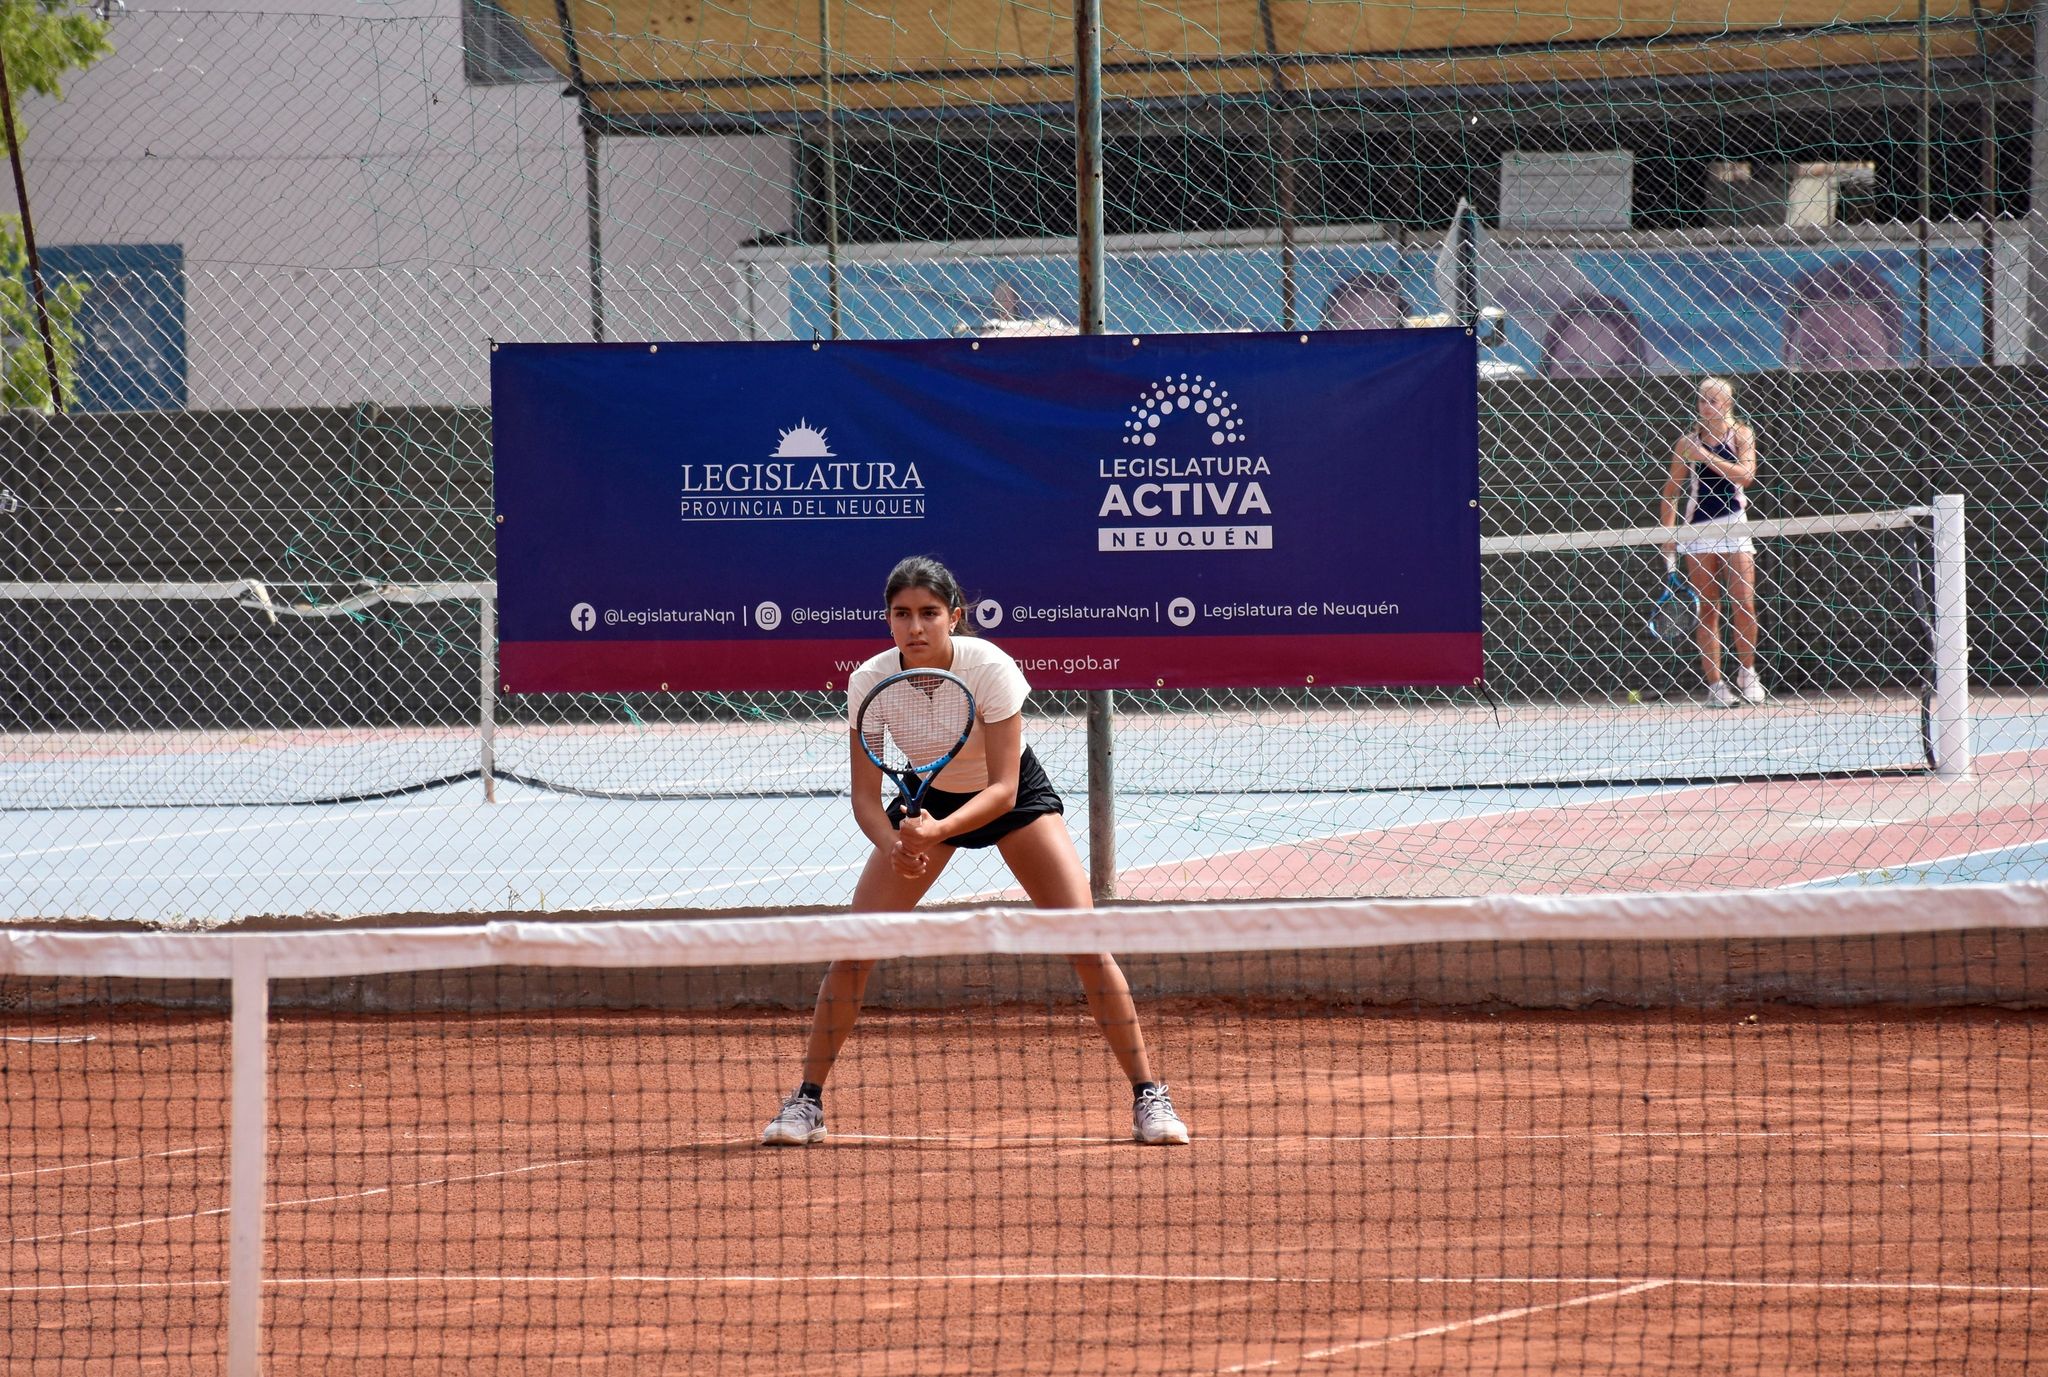 La neuquina Sofía Madrid Rocca es finalista en singles y dobles. (Foto: Florencia Salto)